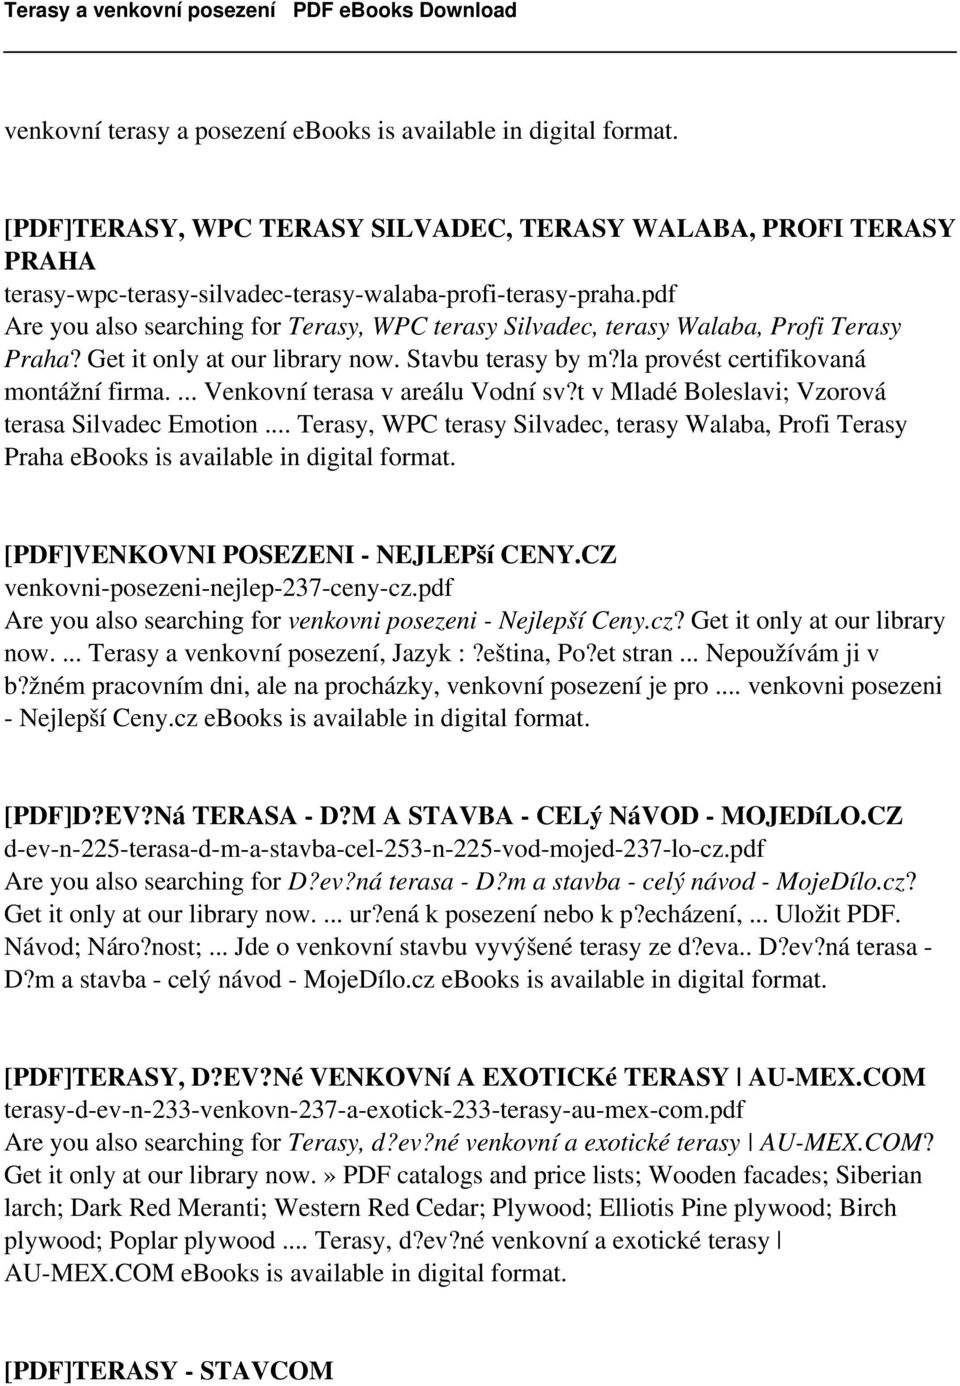 ... Venkovní terasa v areálu Vodní sv?t v Mladé Boleslavi; Vzorová terasa Silvadec Emotion... Terasy, WPC terasy Silvadec, terasy Walaba, Profi Terasy Praha ebooks is available in digital format.